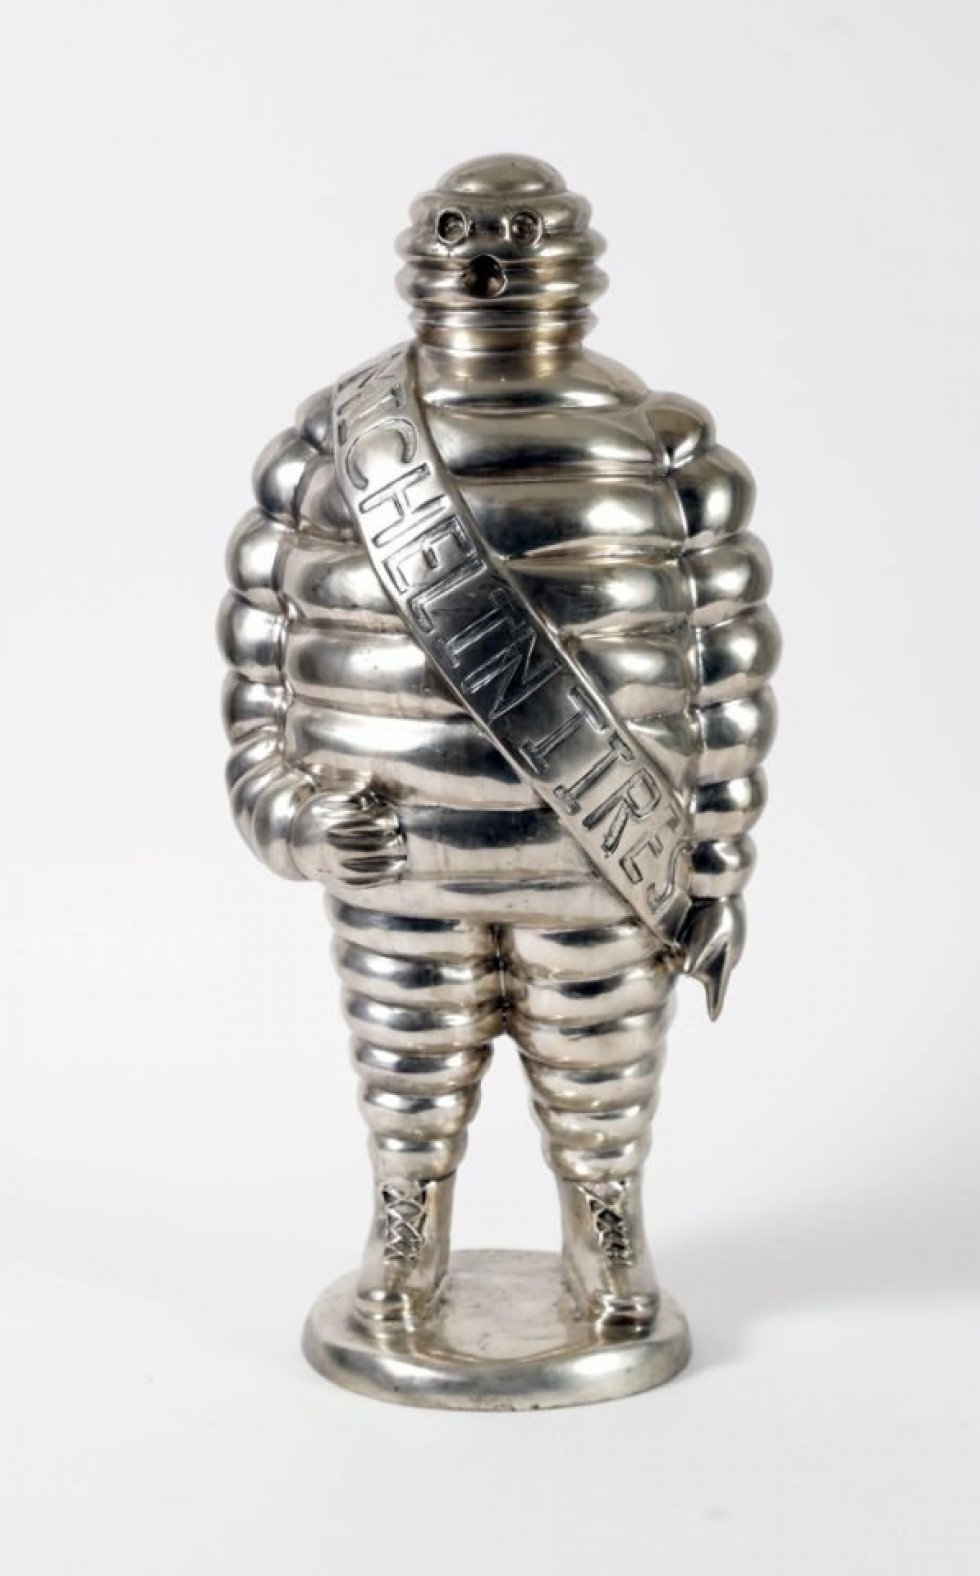 Michelin Man replica i sølv og bronze - 1.400 kroner - Anthony Bourdains værdifulde ejendele bortauktioneres